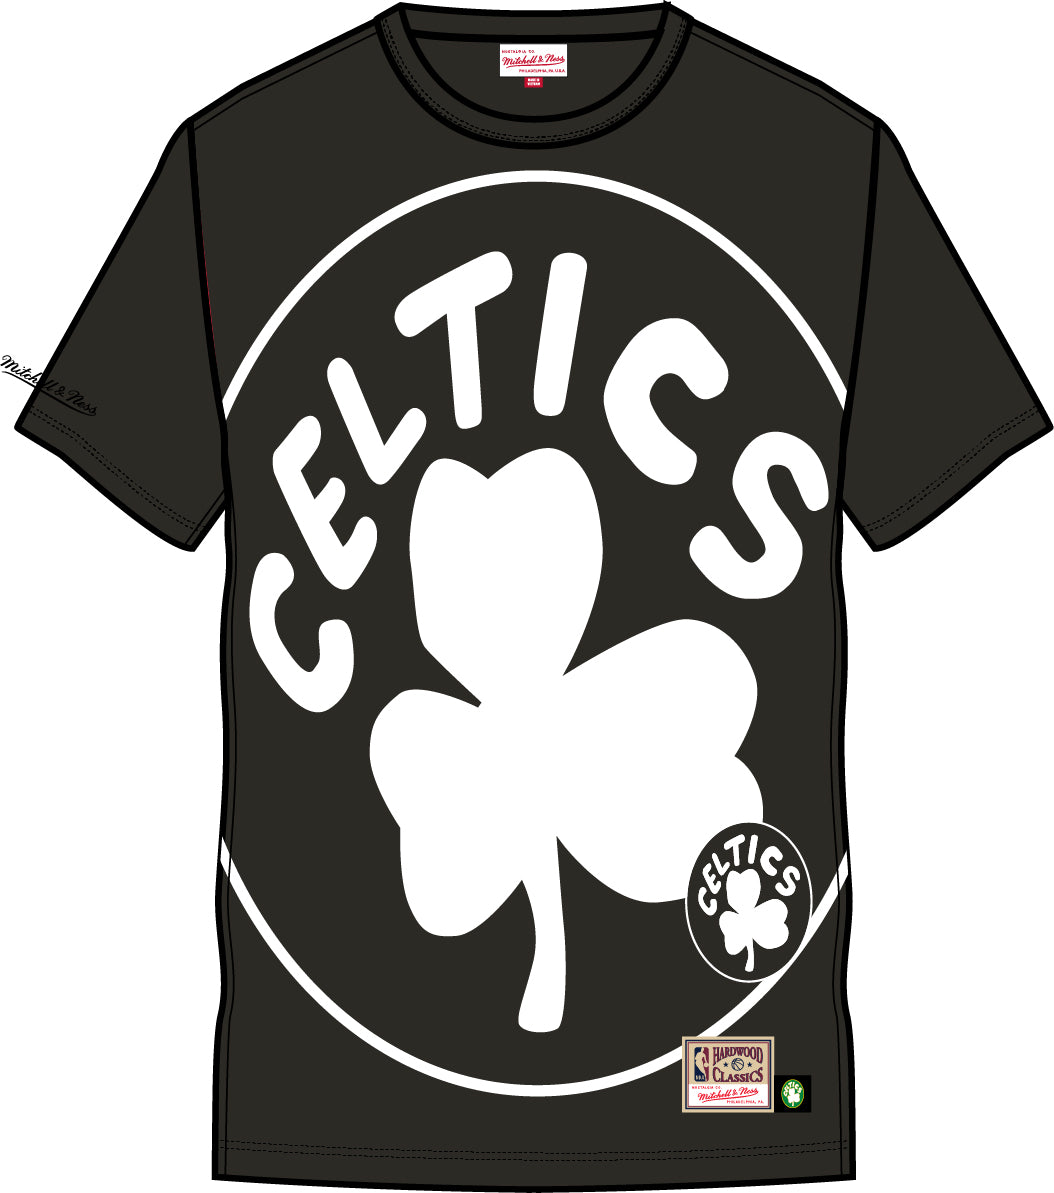 black boston celtics t shirt